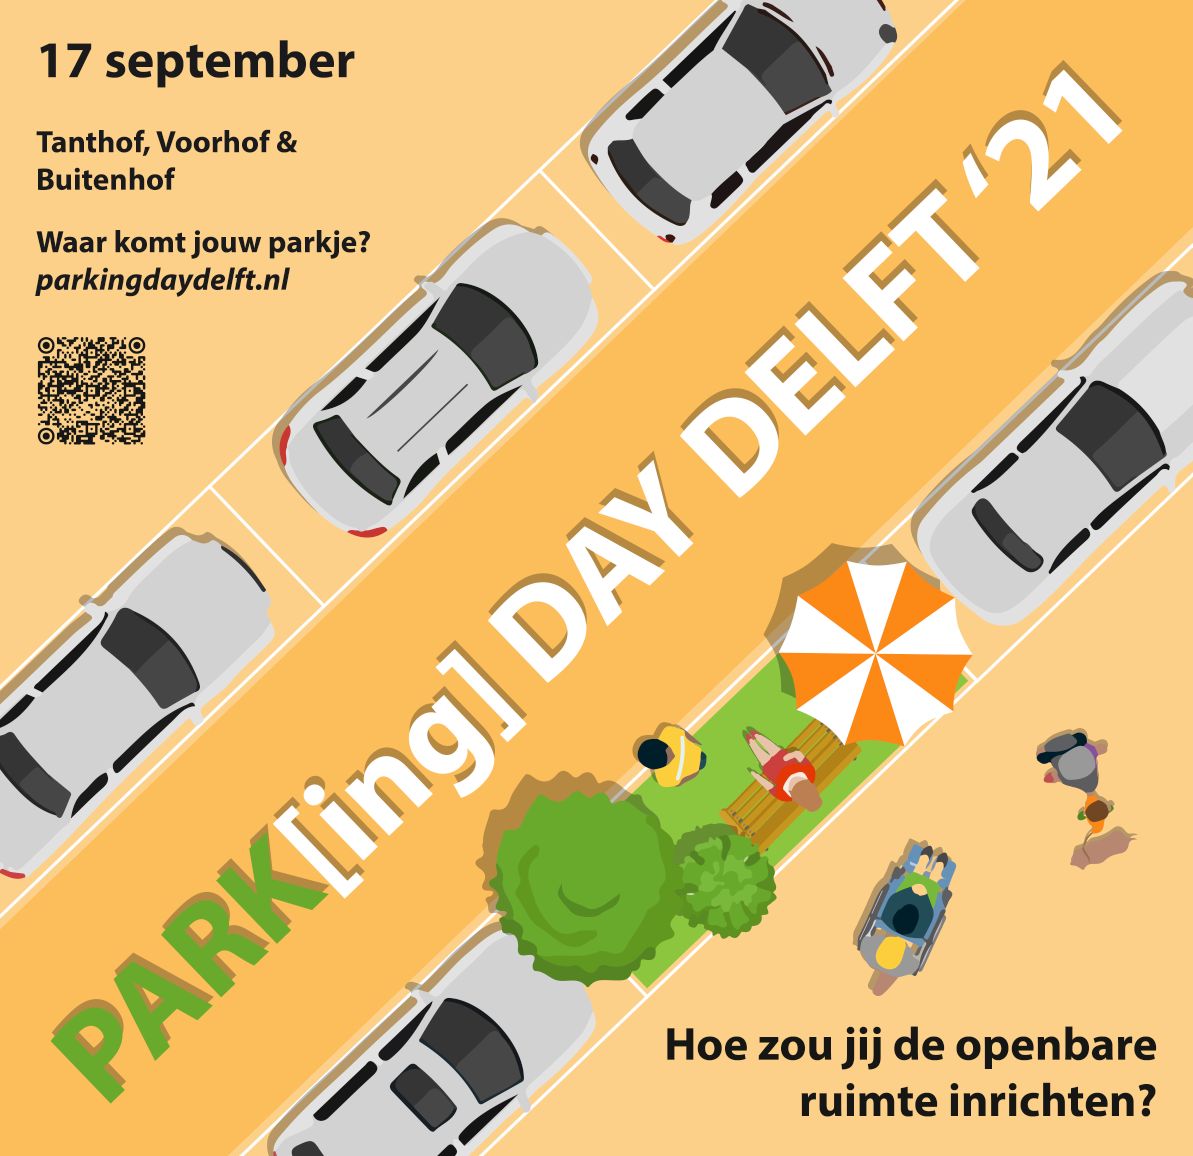 Parking Day Delft. 17 September. Tanthof, Voorhof & Buitenhof. Waar komt jouw parkje? Hoe zou jij de openbare ruimte inrichten?